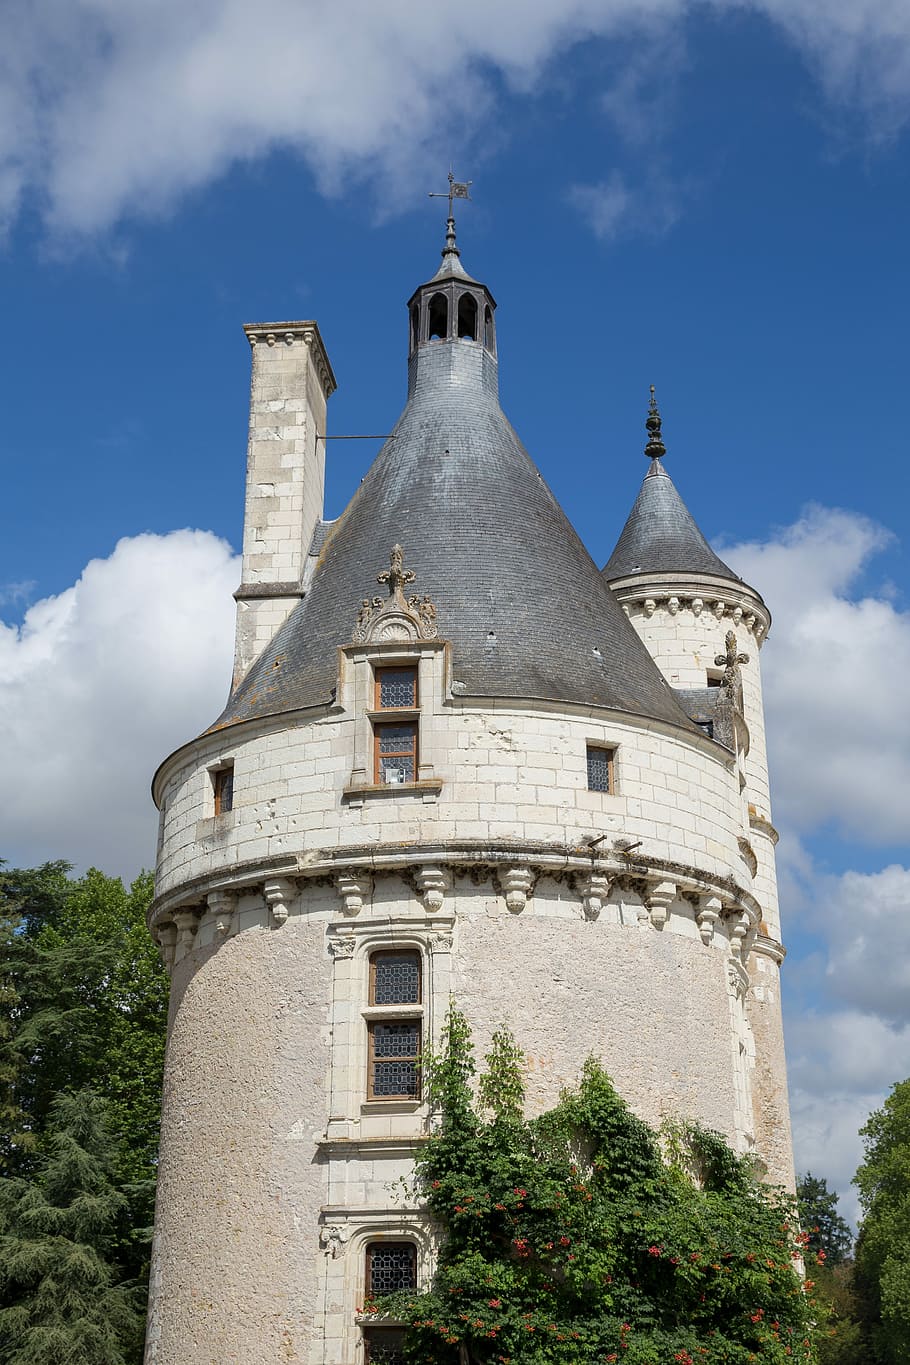 Castle, Loire Valley, château de chenonceau, château de la loire